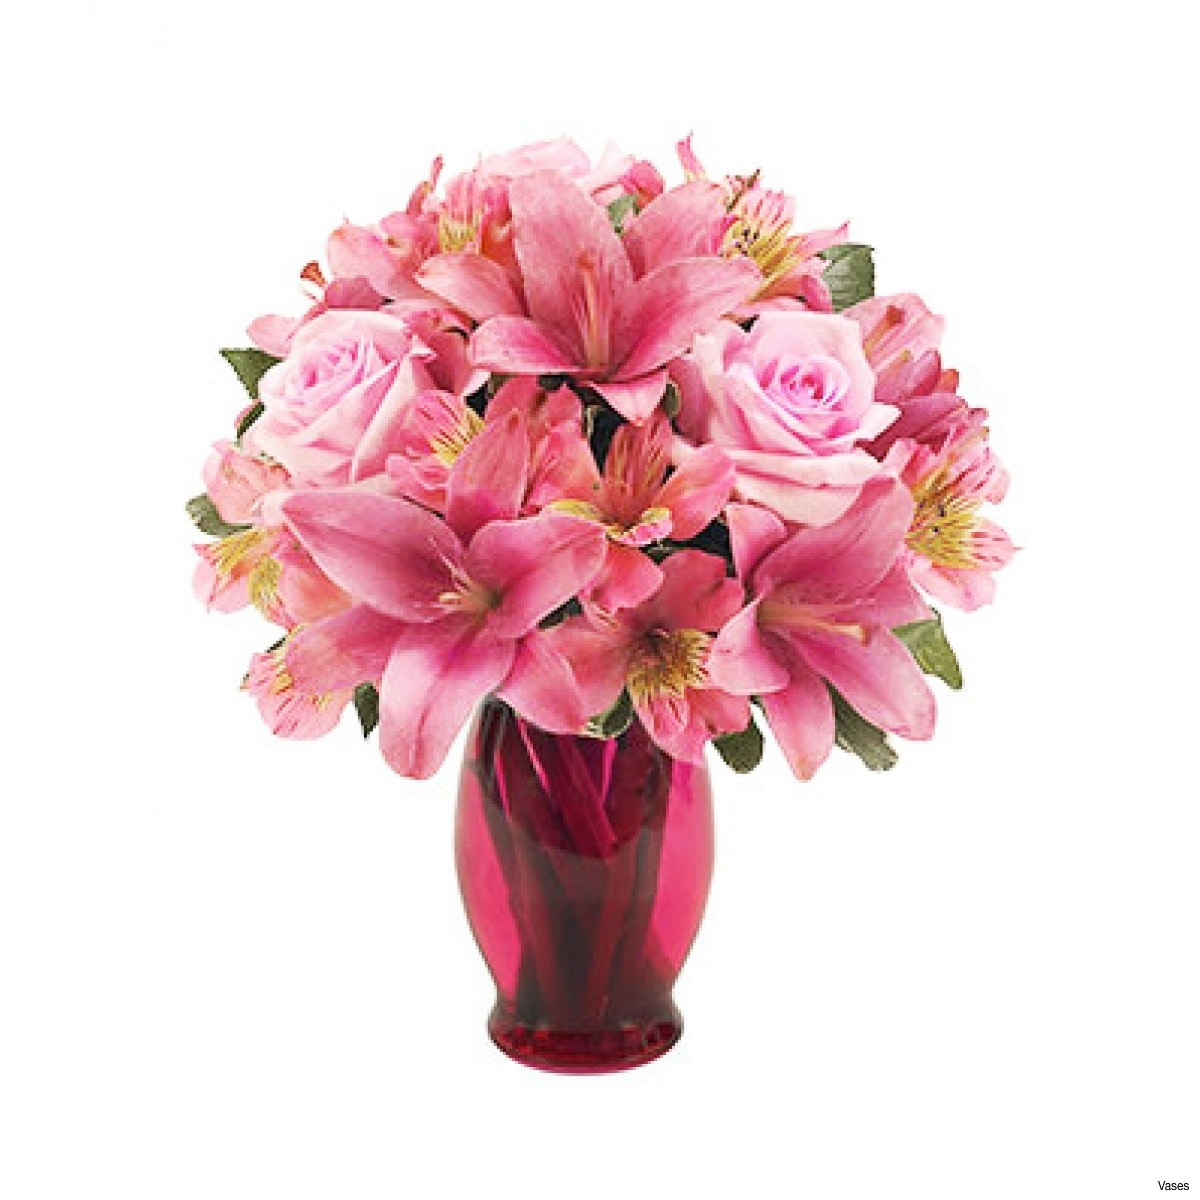 12 Stunning Vintage Flower Vase 2024 free download vintage flower vase of elegant flower picture for colouring pets nature wallpaper throughout bf142 11km 1200x1200h vases pink flower vase i 0d